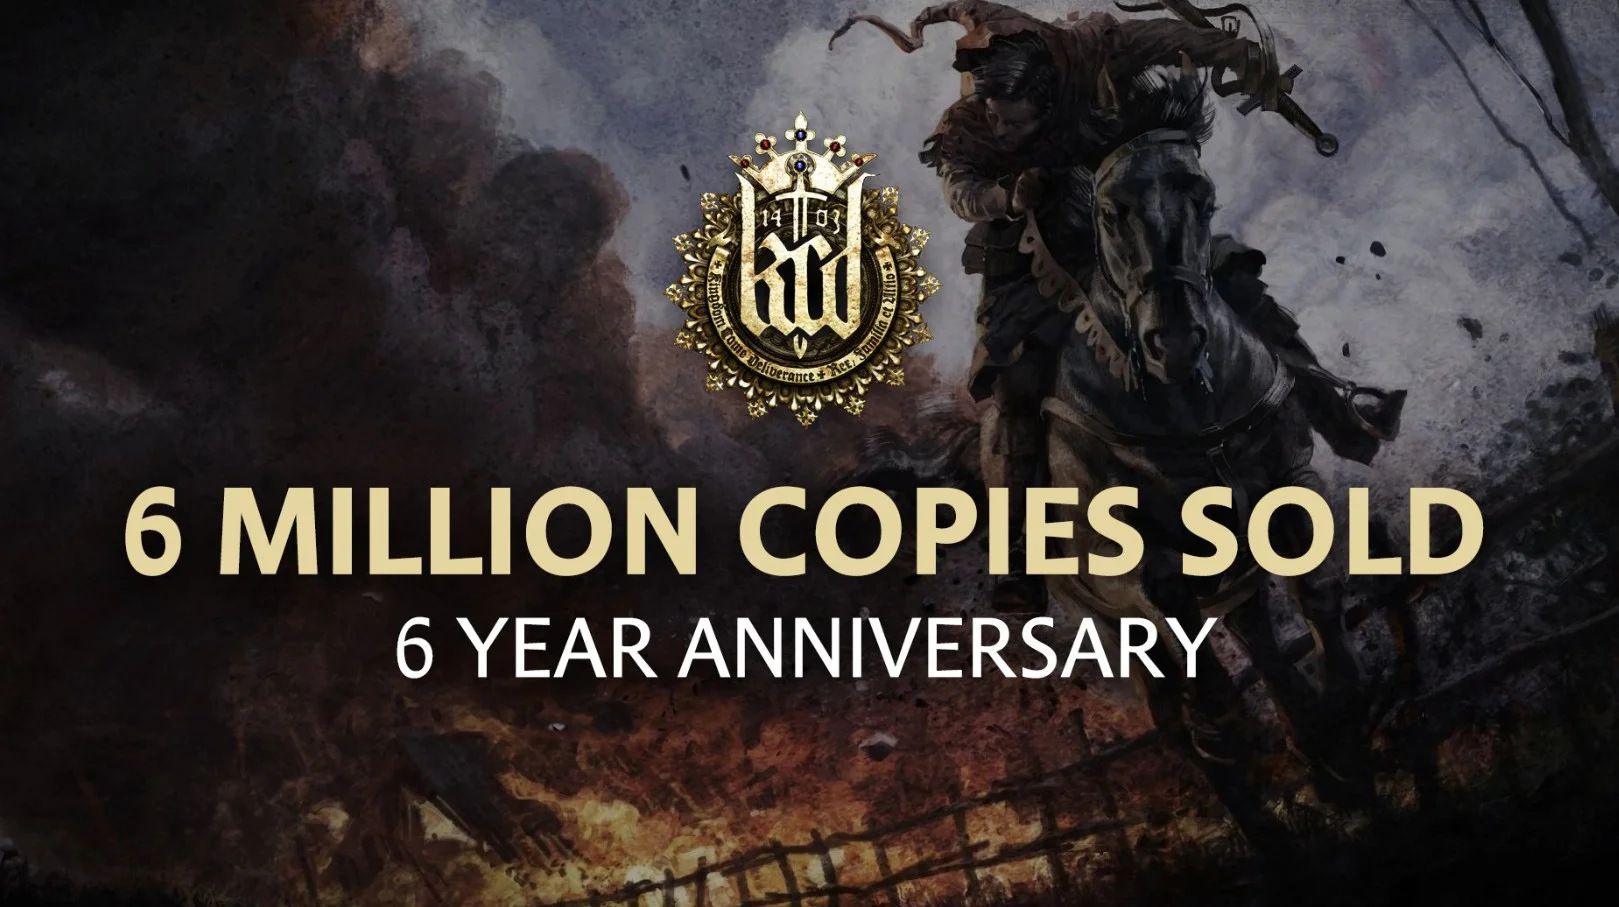 Продажи Kingdom Come Deliverance превысили 6 миллионов копий к шестой годовщине - фото 1